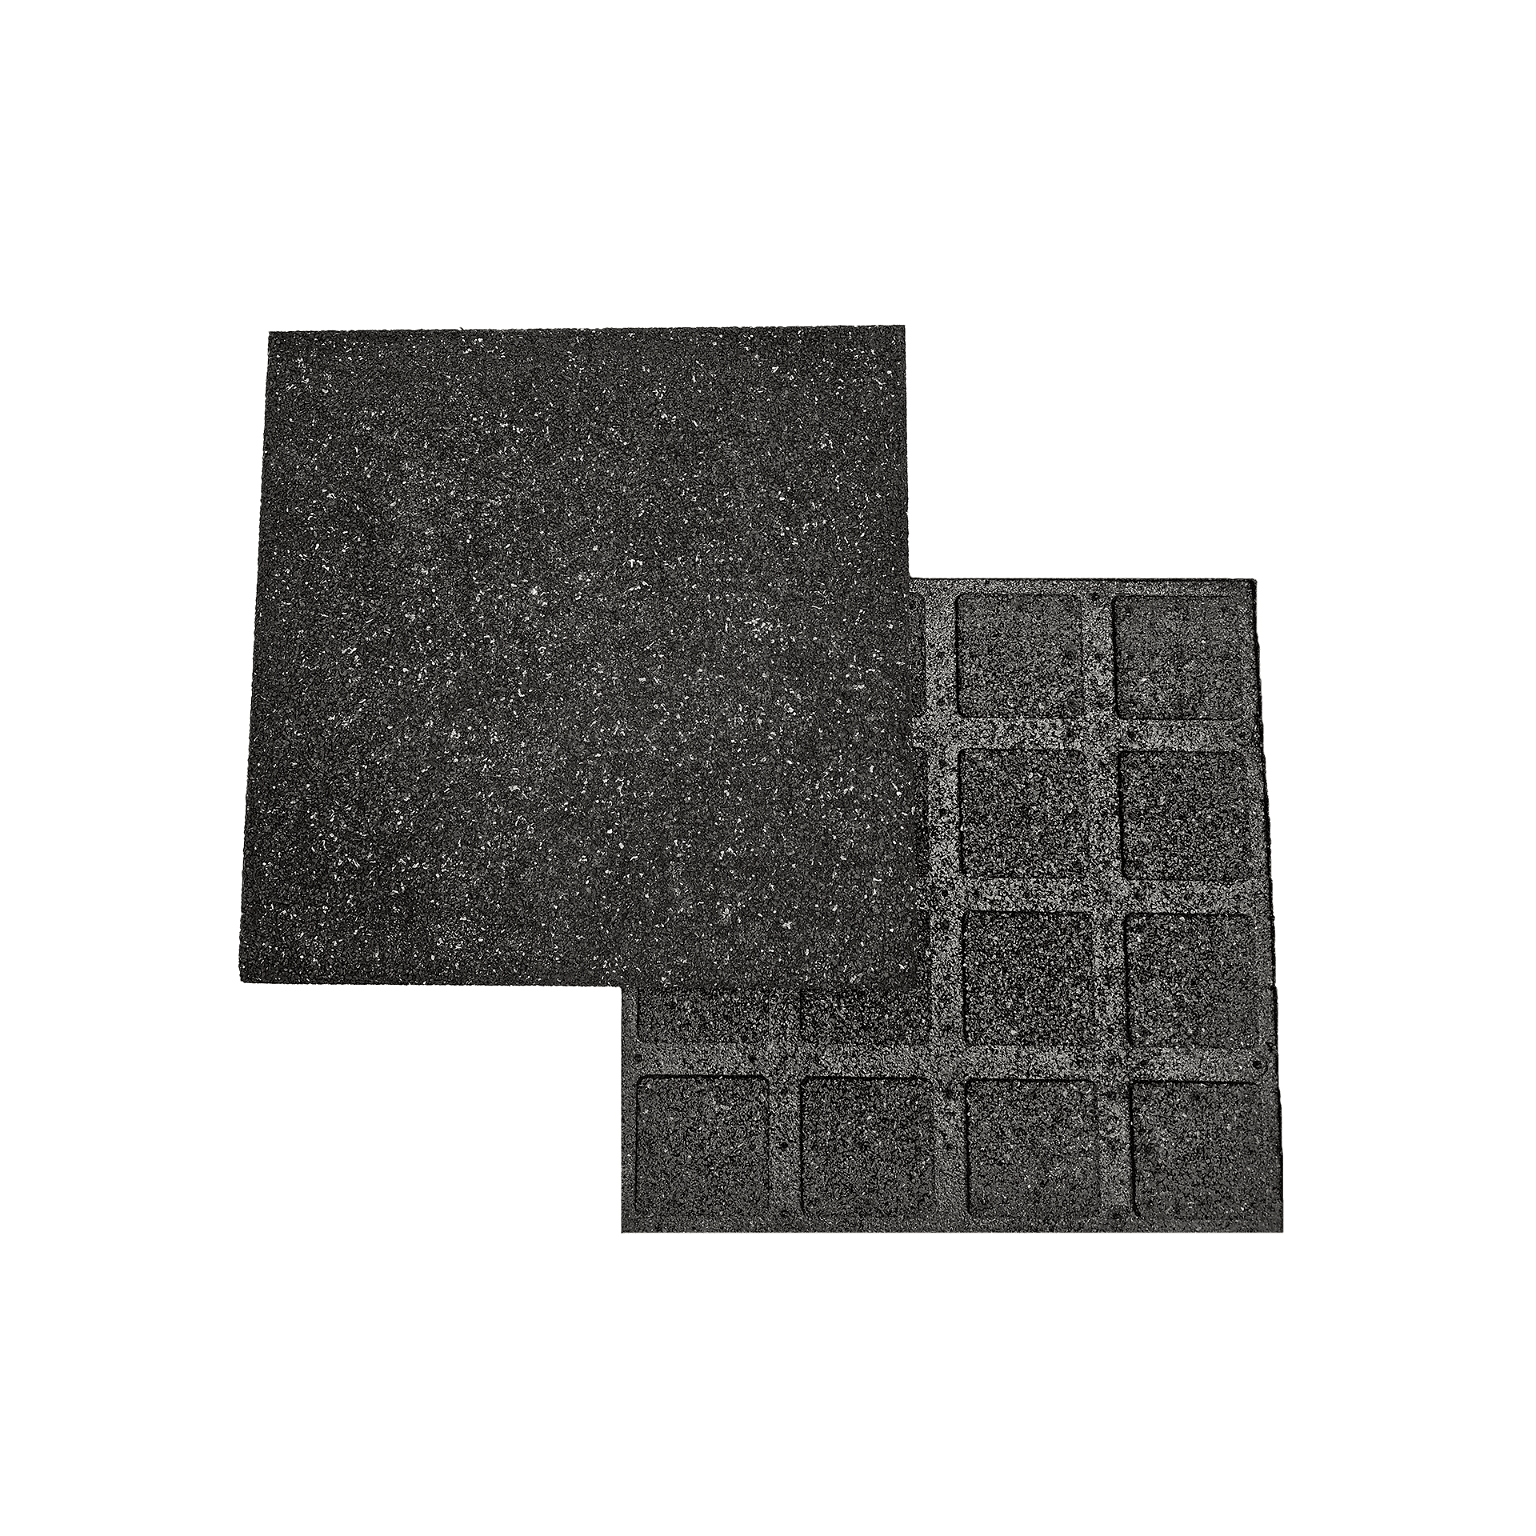 Guminė grindų danga vaikų žaidimų aikštelėms 40 mm, juoda